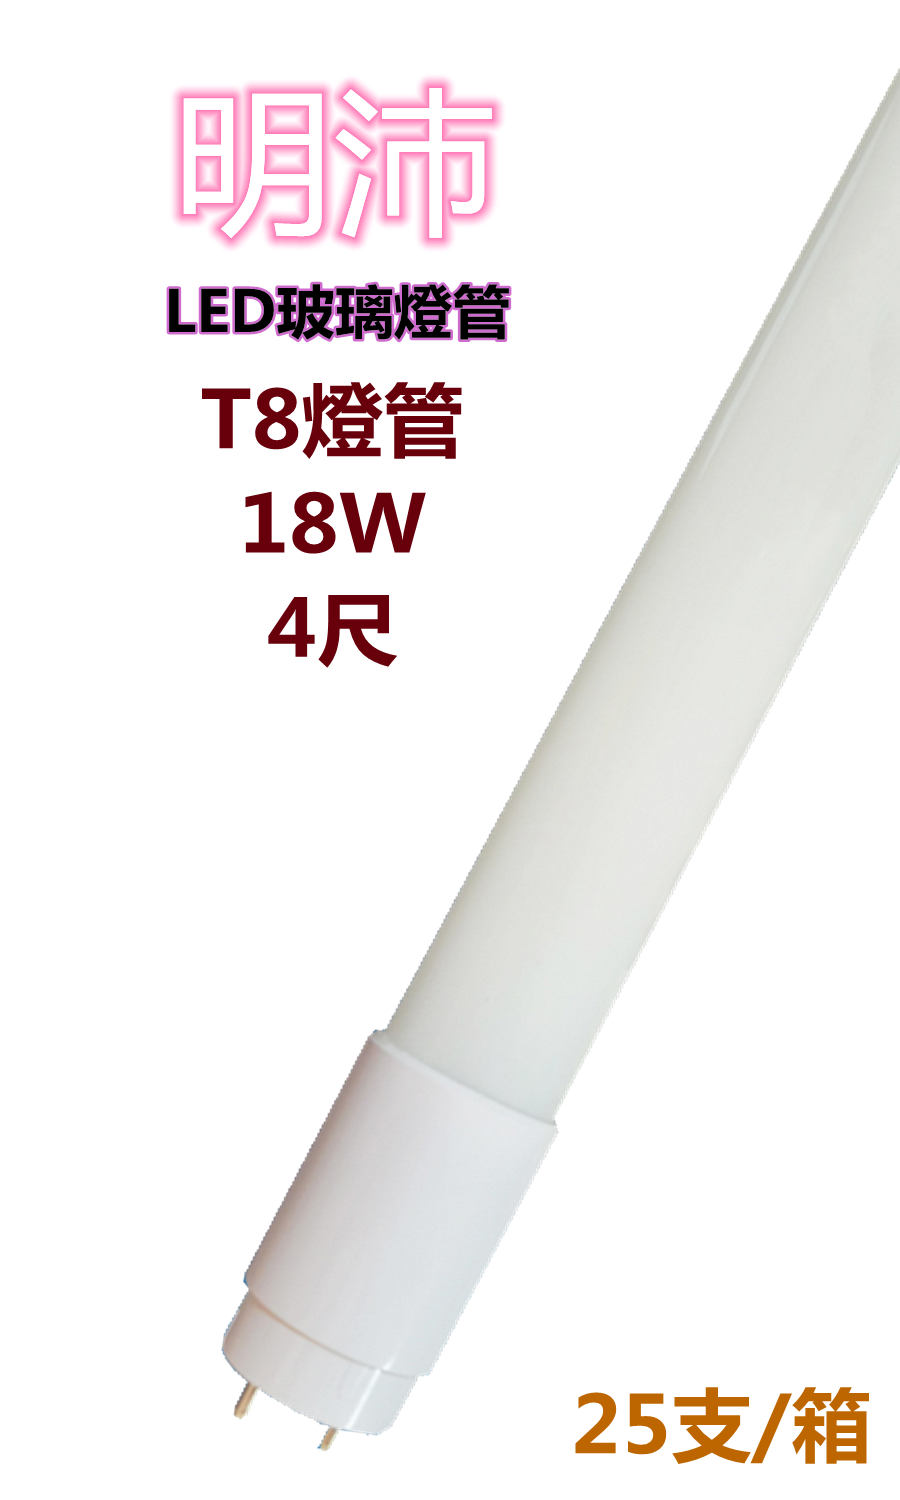 【明沛】T8燈管 LED高亮度燈管 18W (4尺-白光) MP5654 ※購買以箱為單位※每箱25支※